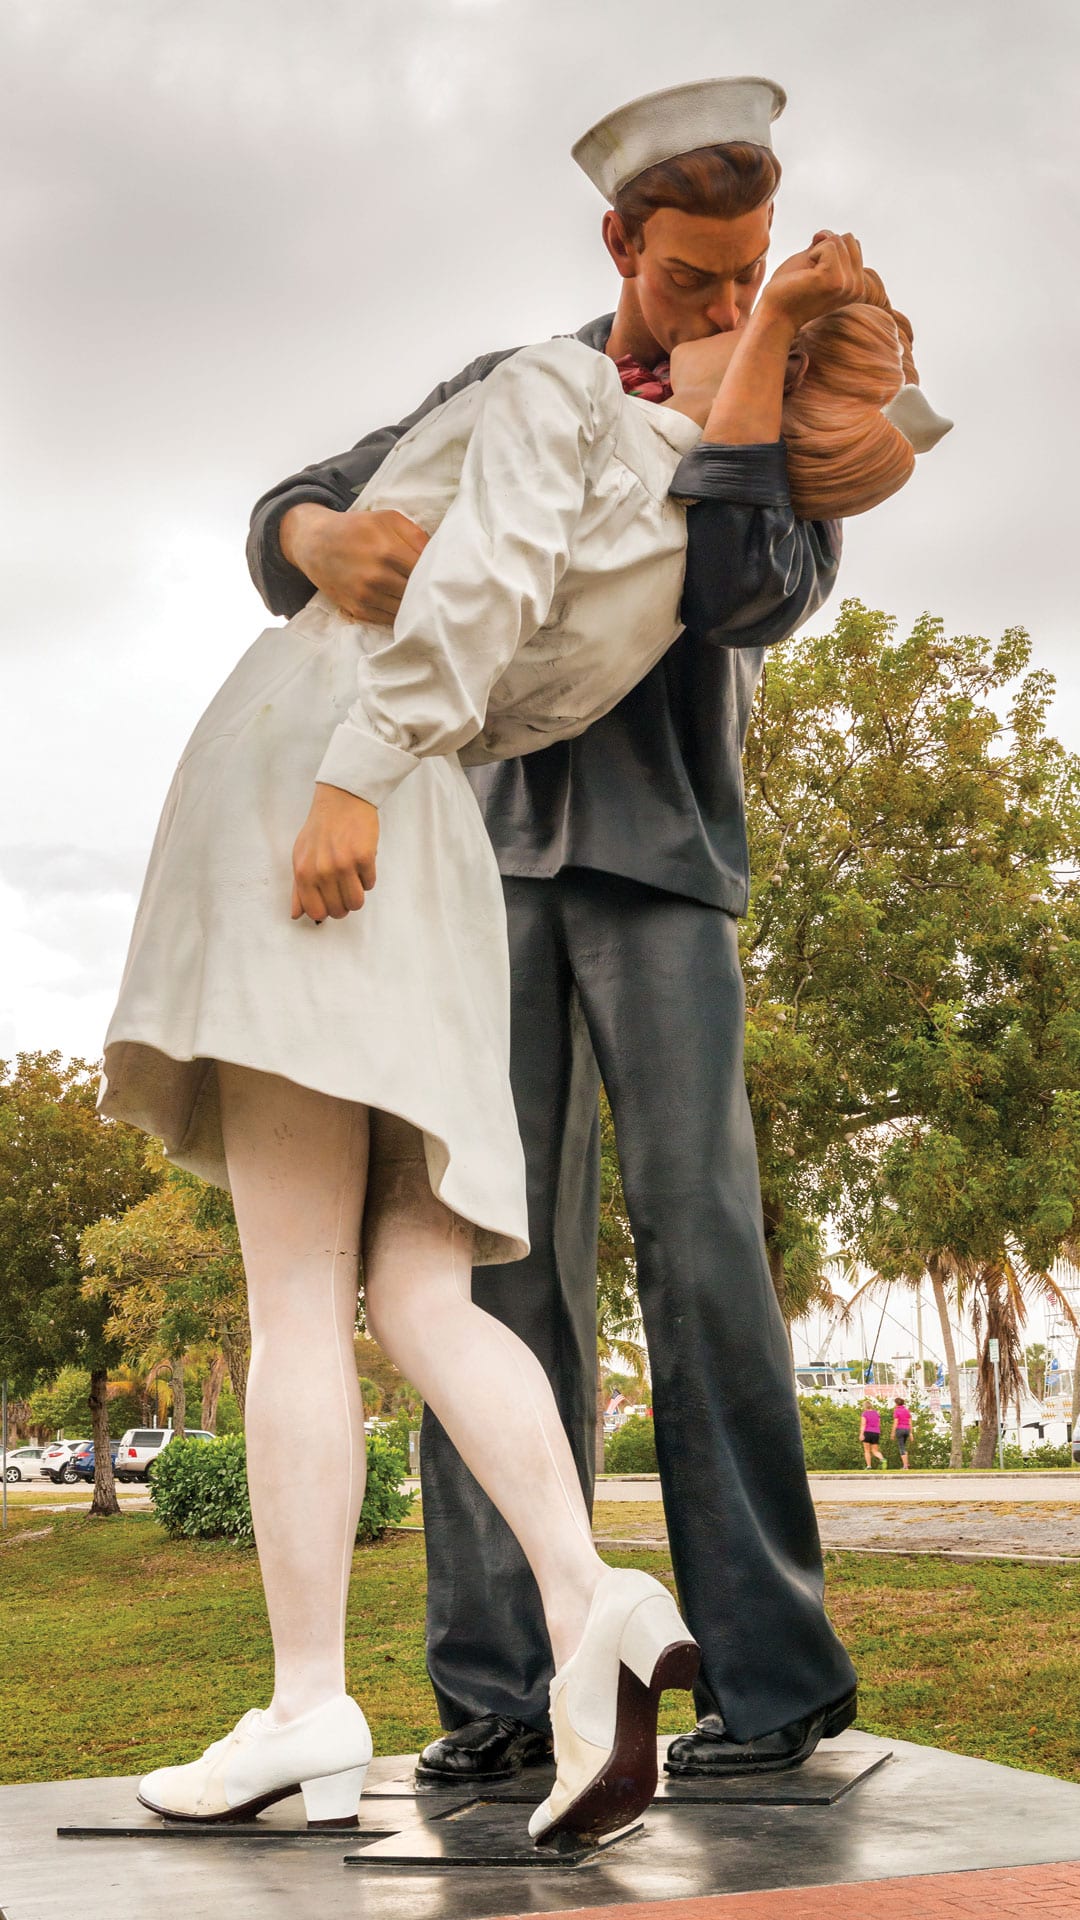 Sarasota Statue